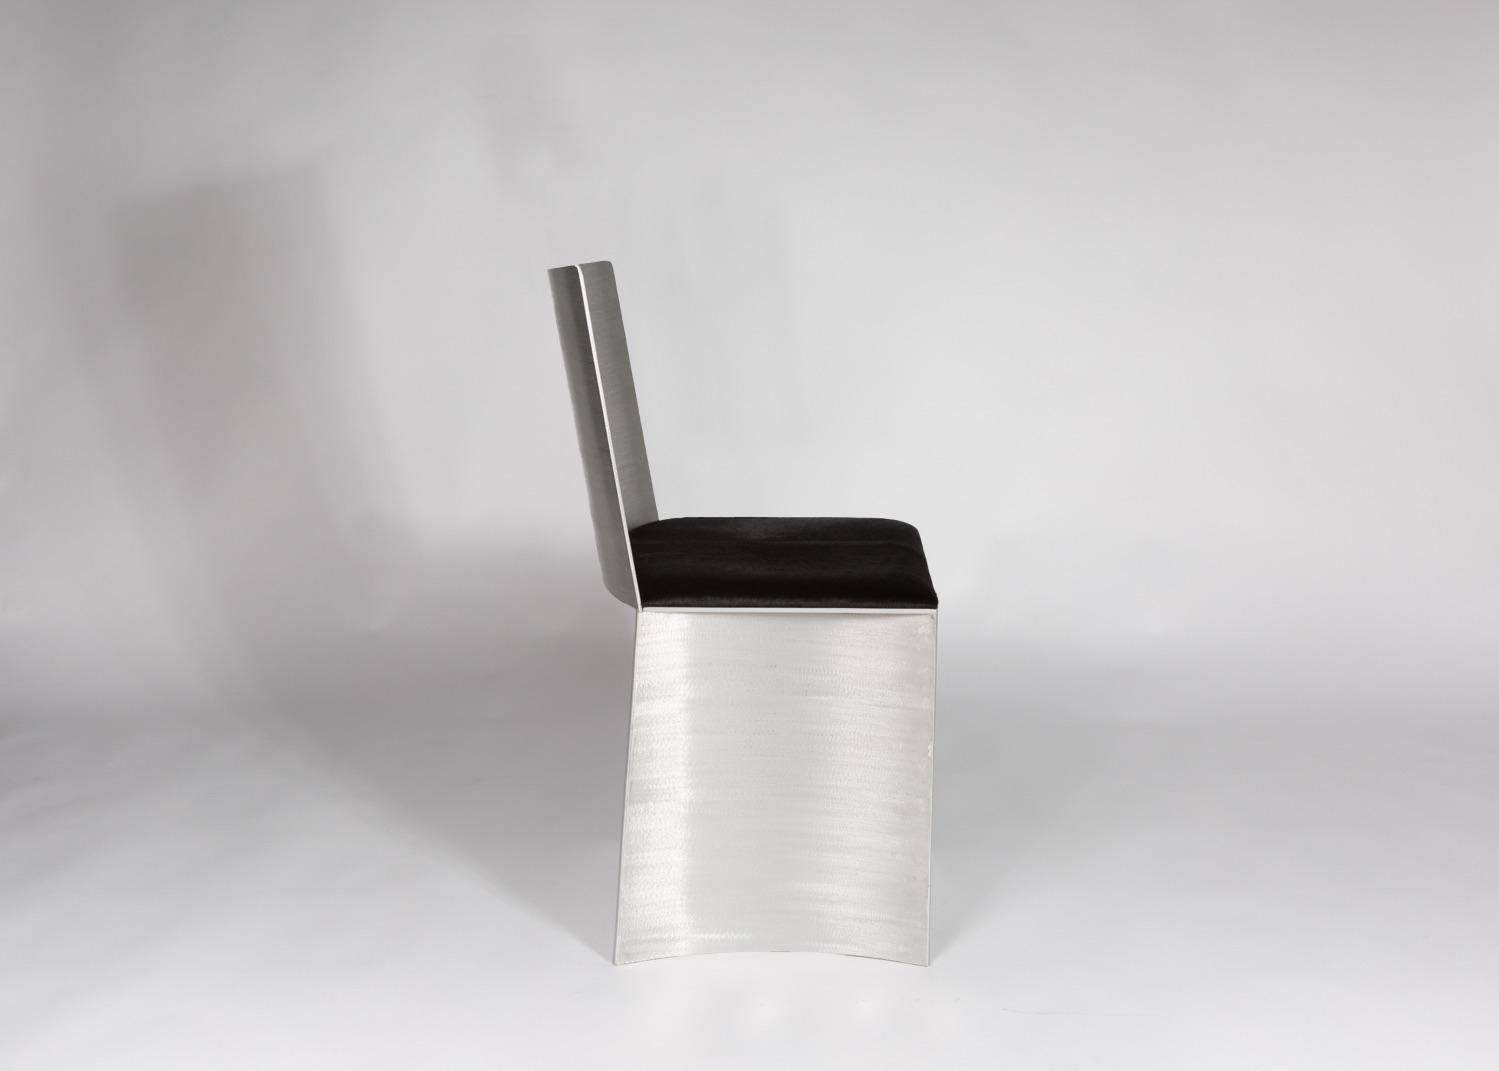 Der ISU Lowback Stuhl hat eine handgefertigte, satinierte, strukturierte Metalloberfläche, die bei Lichteinfall glänzt. Das 1,50-Zoll-Sitzkissen ist ein glänzendes schwarzes Haar auf Leder. 
COM wird nach Genehmigung akzeptiert.
Die perfekte